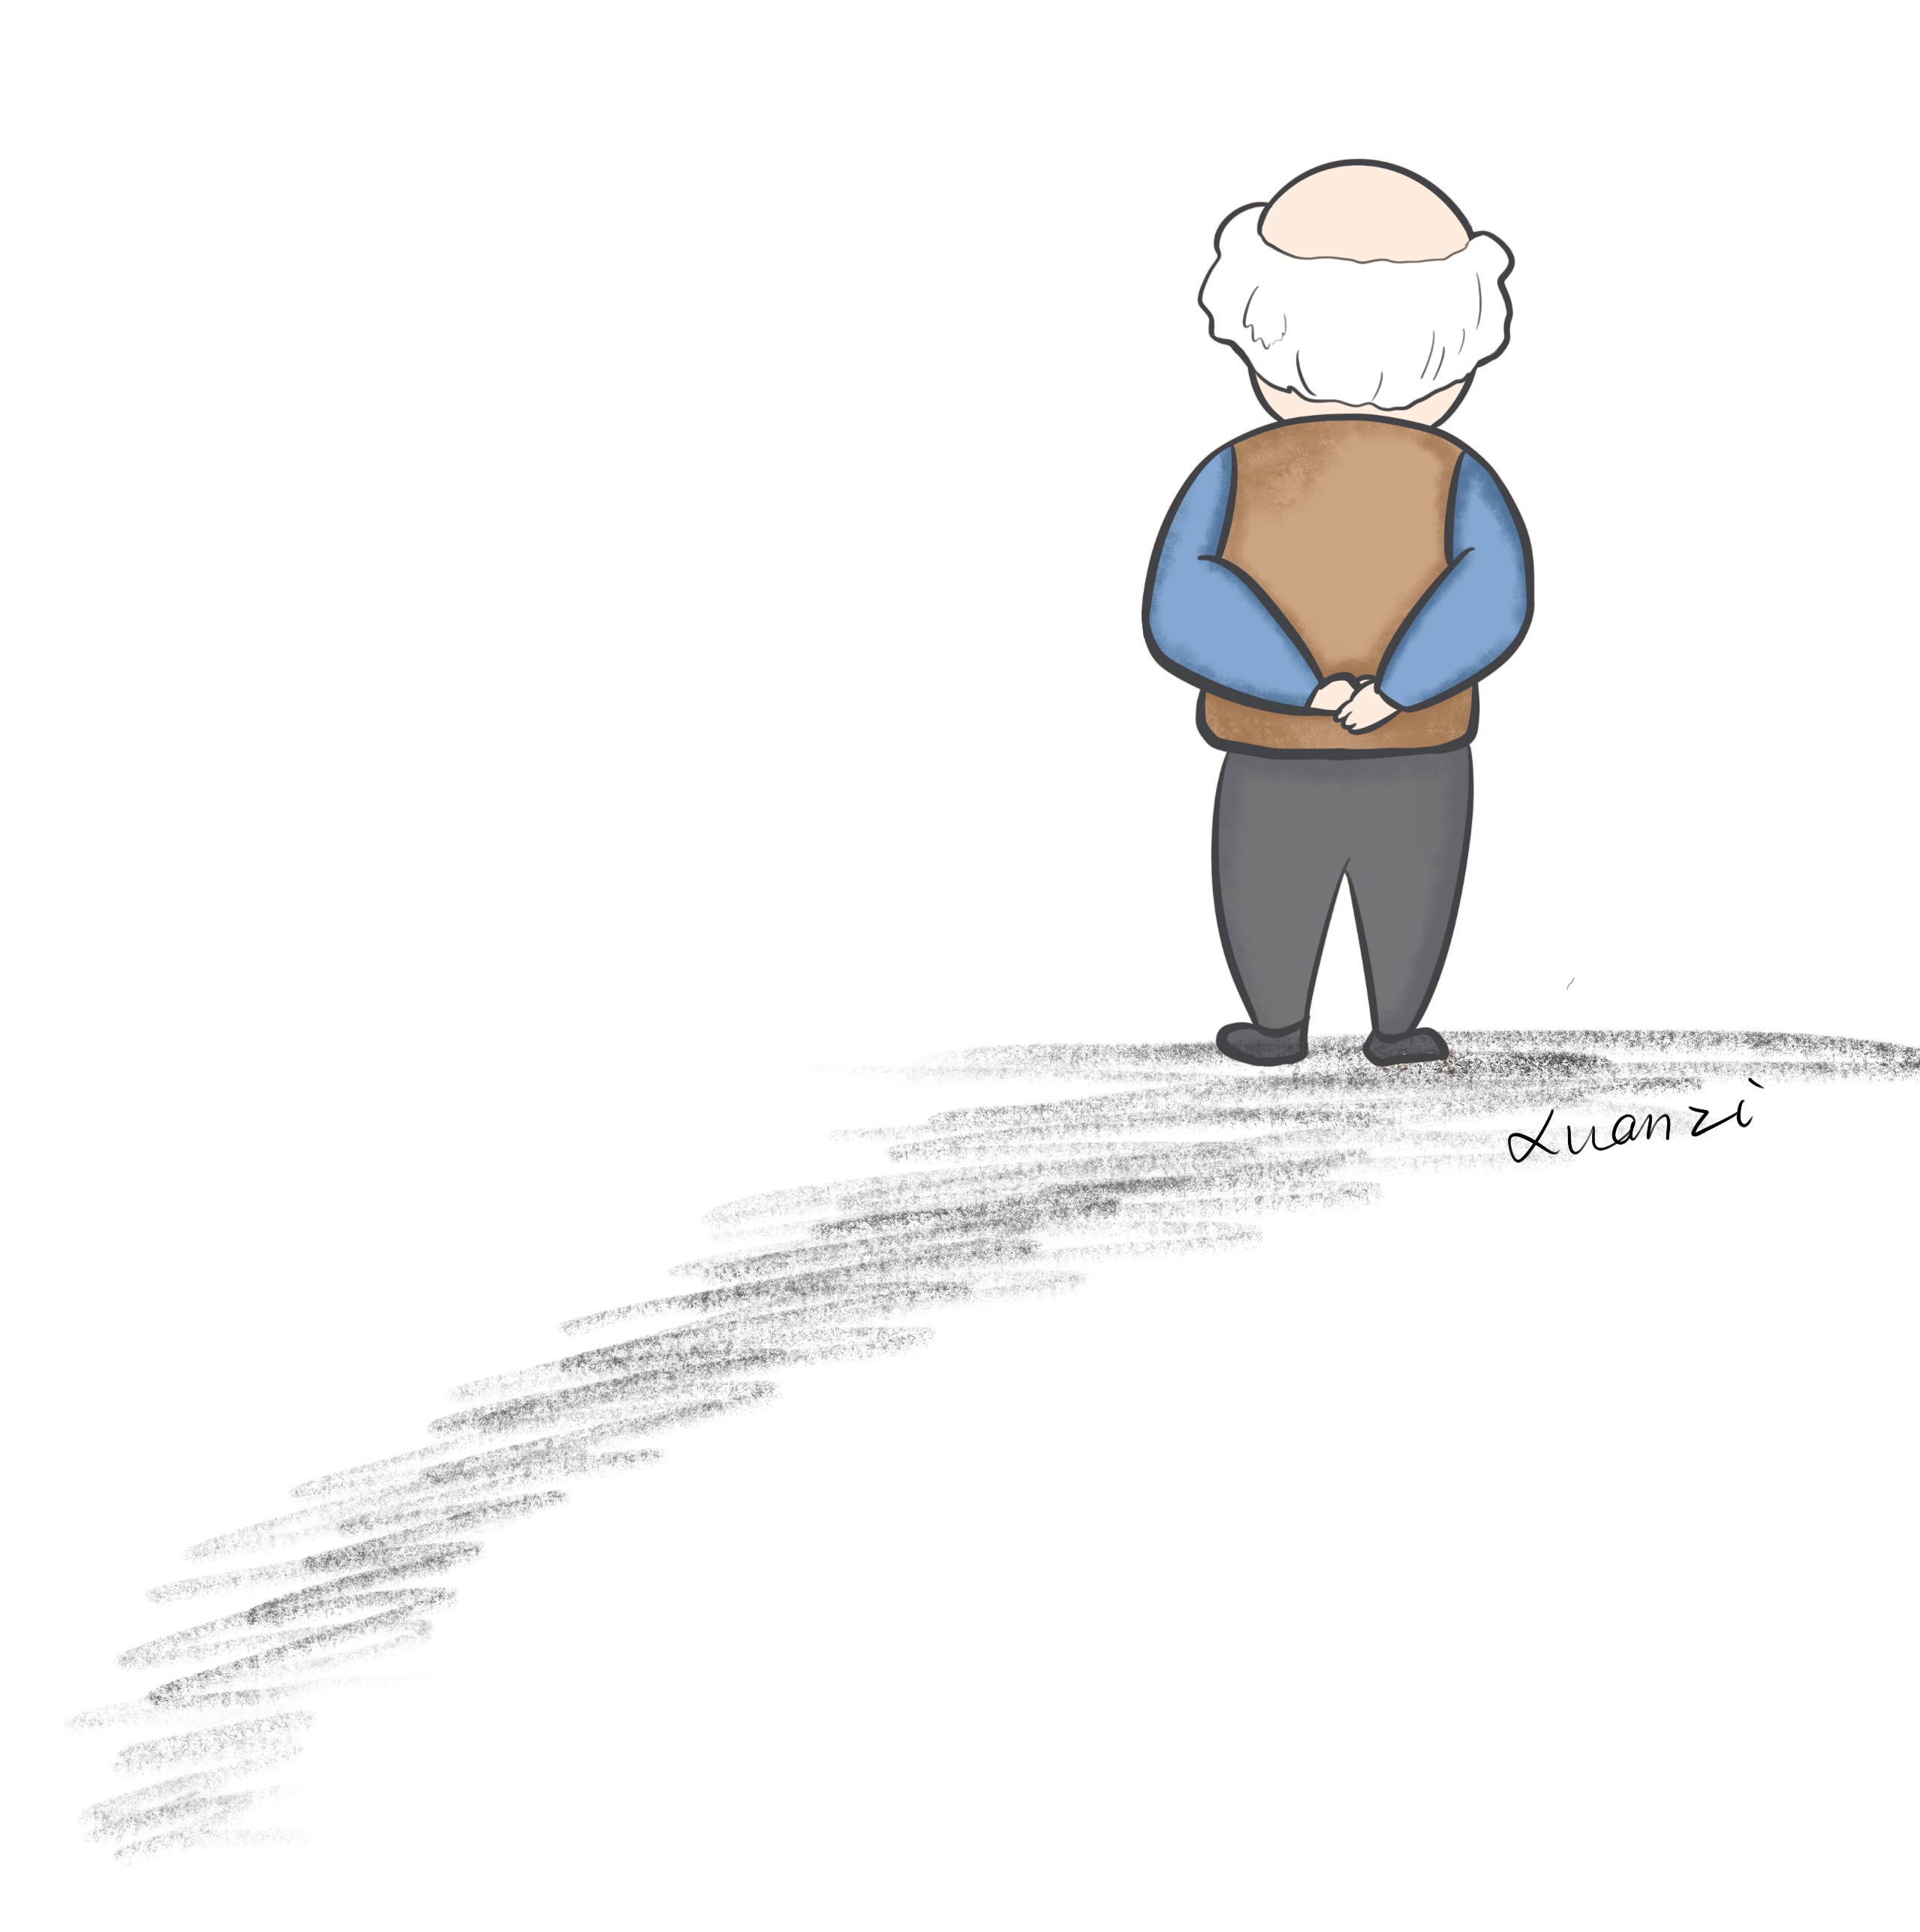 孤独孤独是老年人最常见的一种心理问题,老年人就会加强对自我行为的